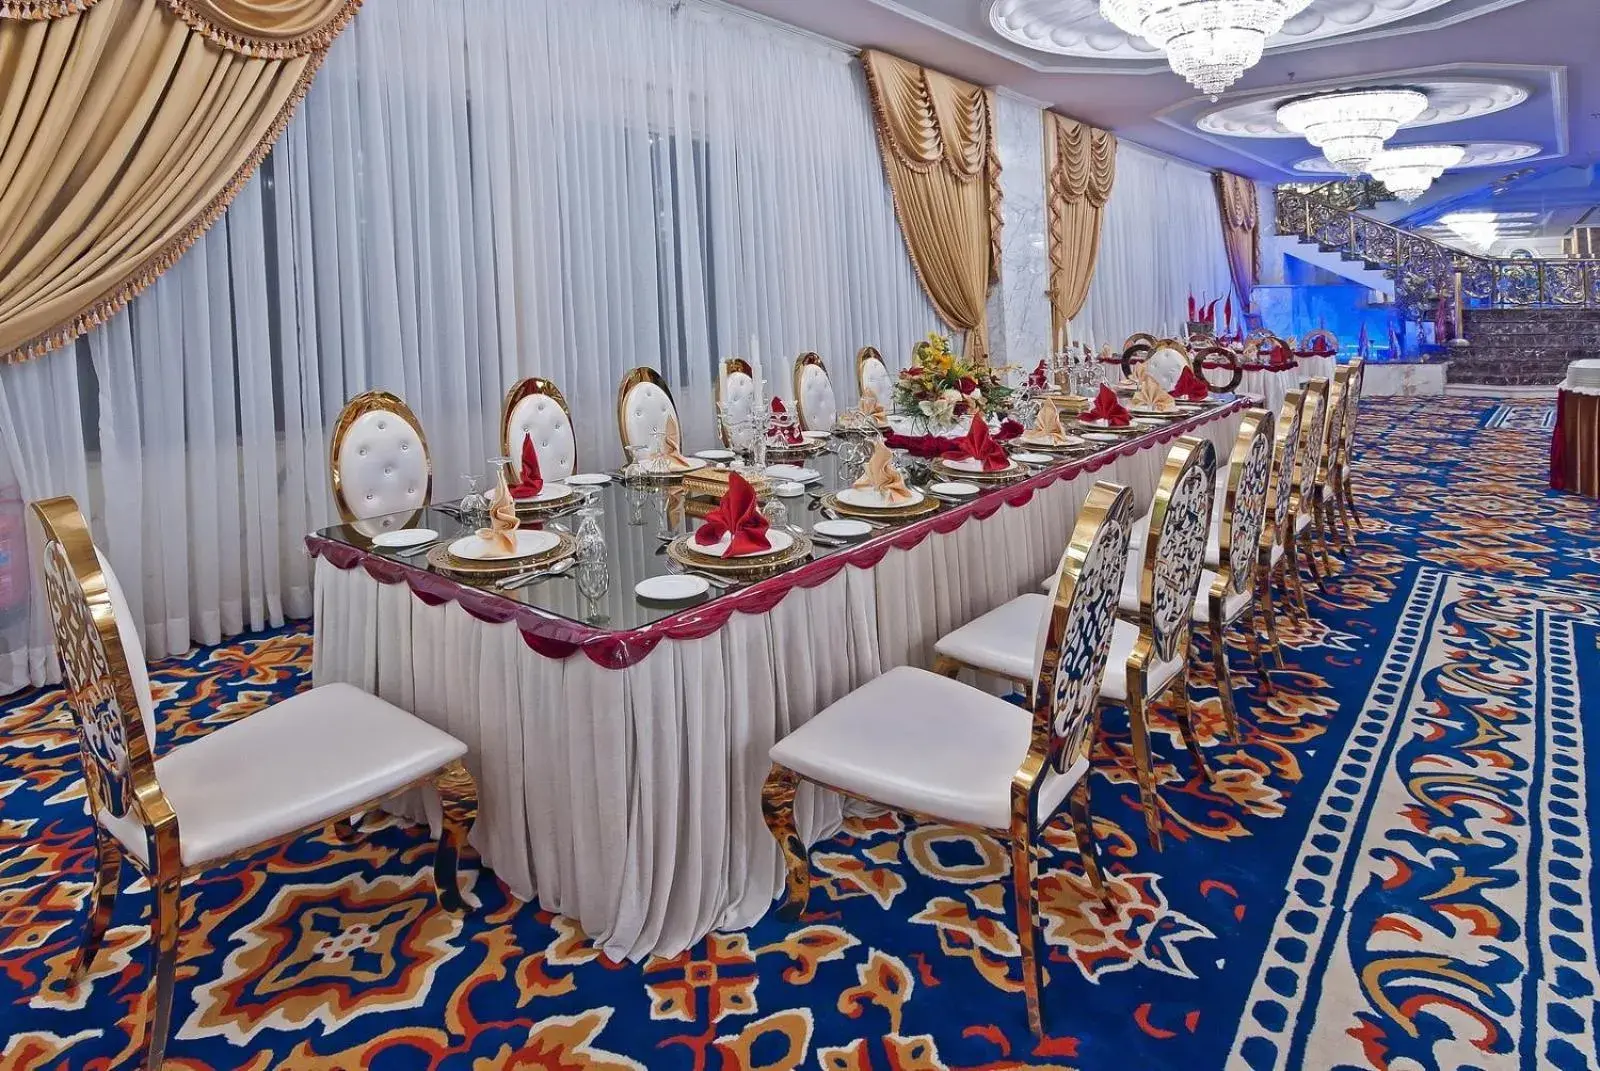 Banquet/Function facilities, Banquet Facilities in Casablanca Hotel Jeddah